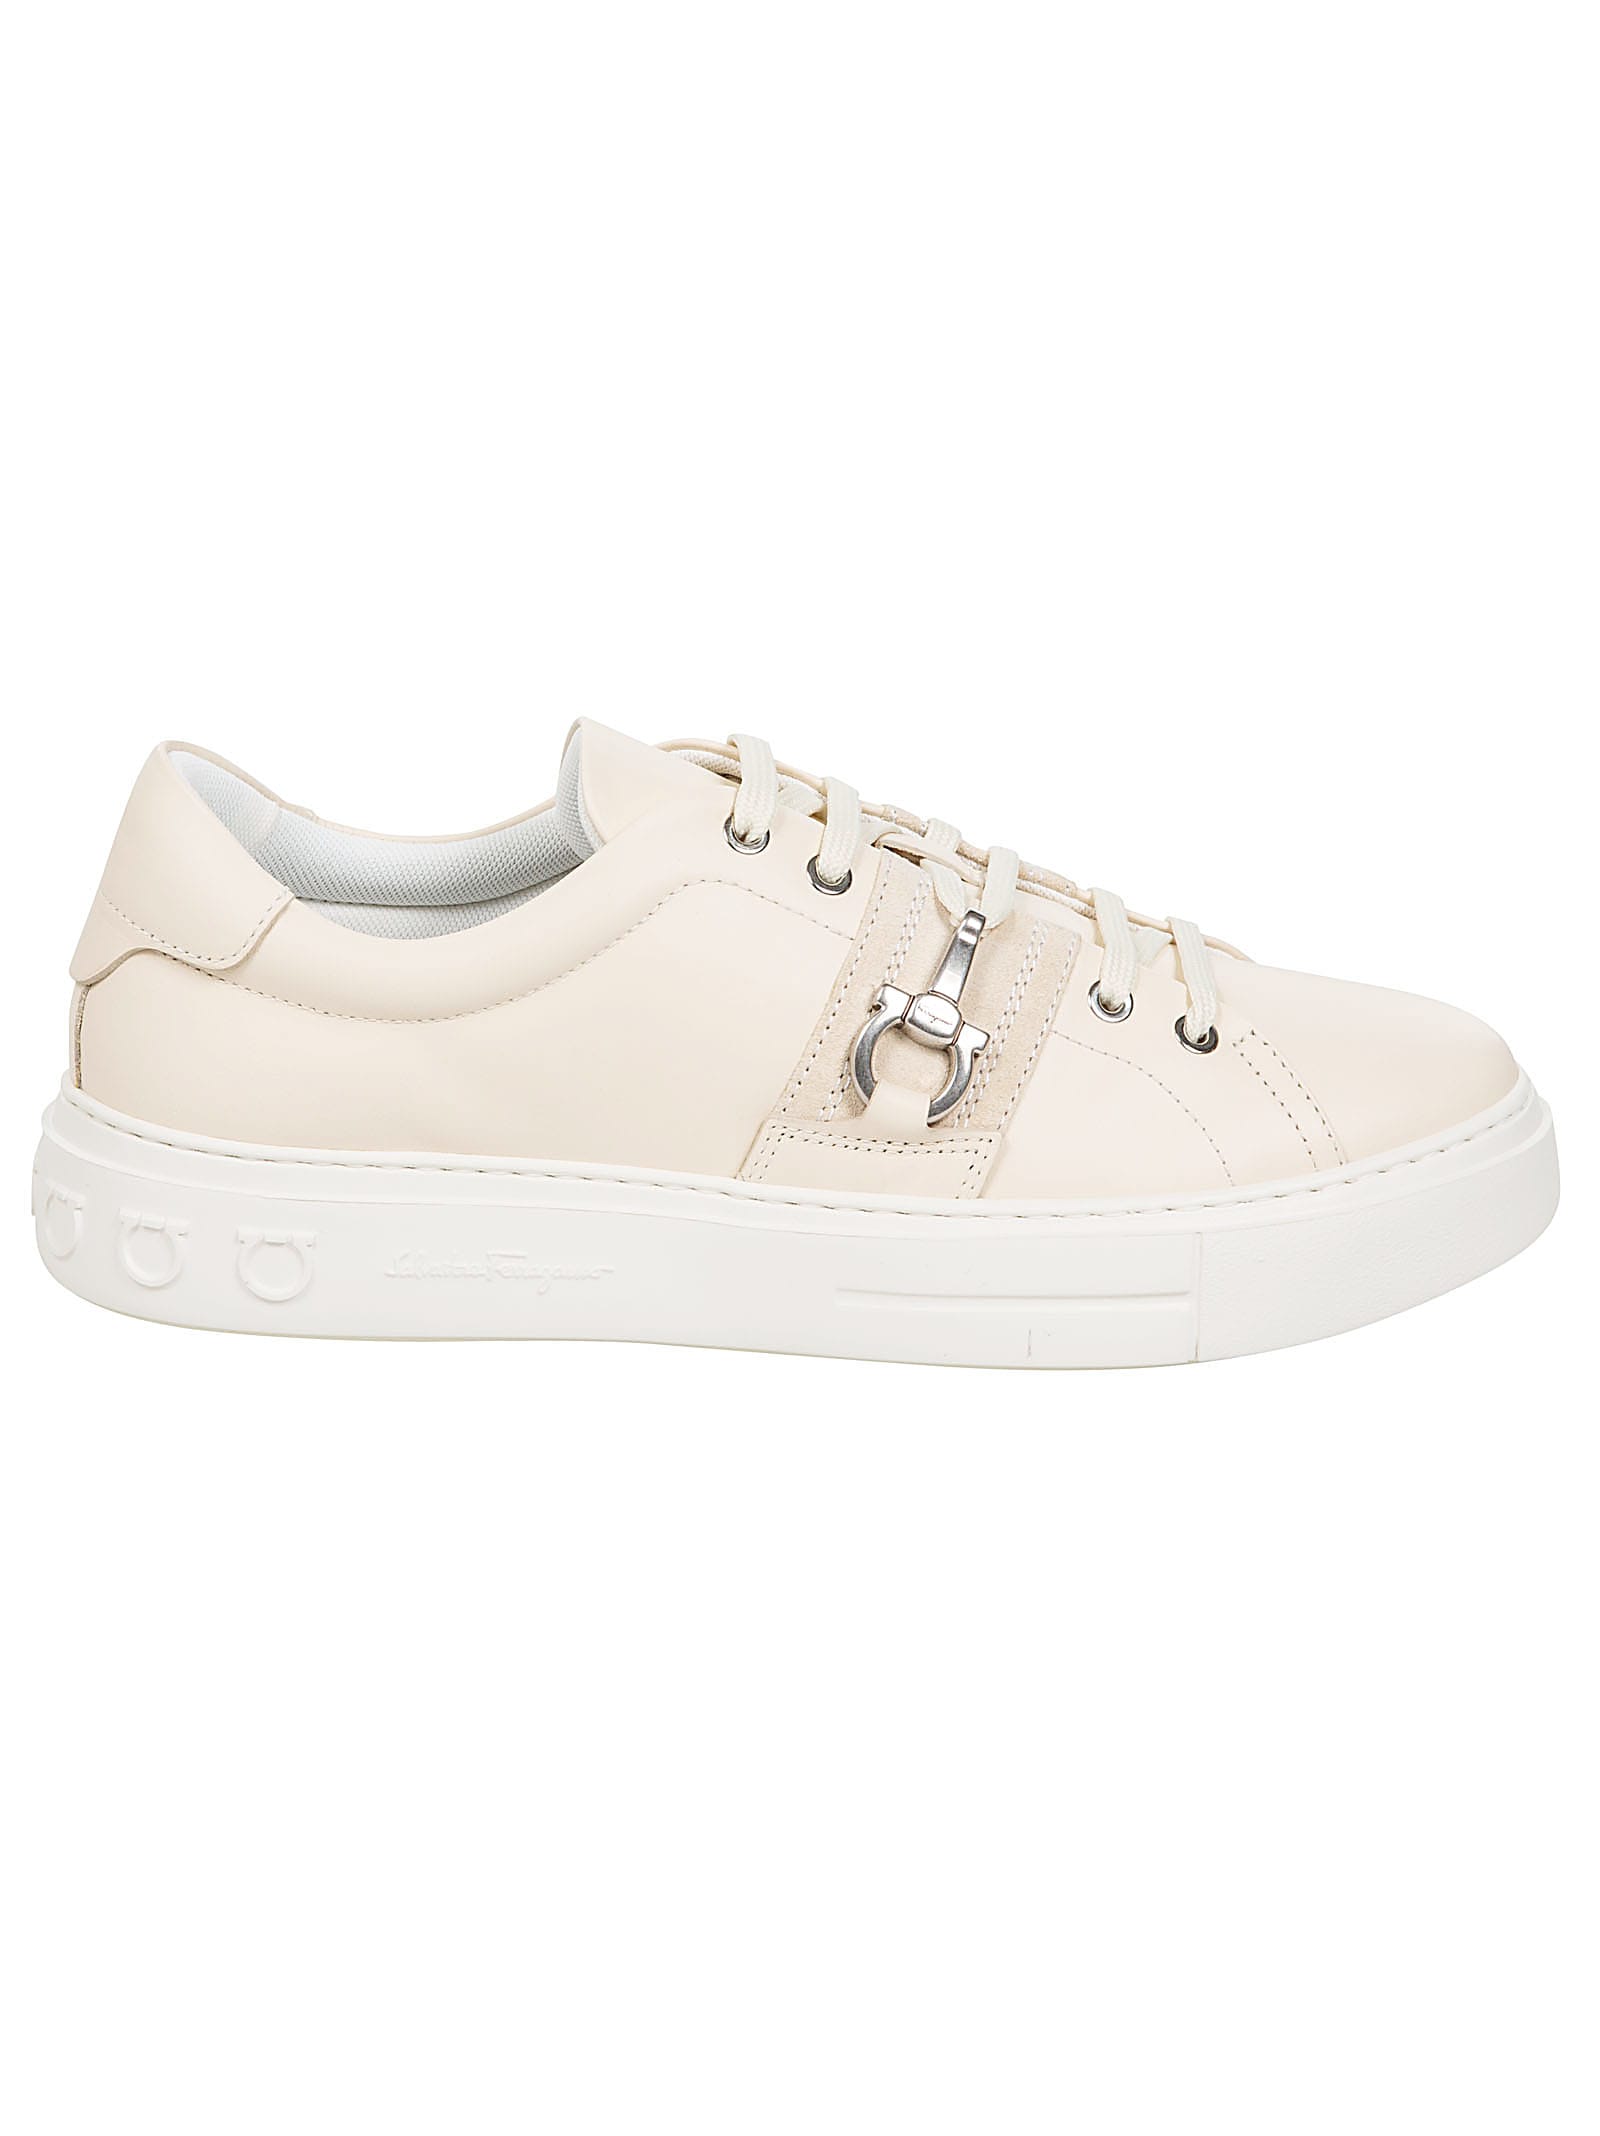 Ferragamo Sultan Sneakers In White